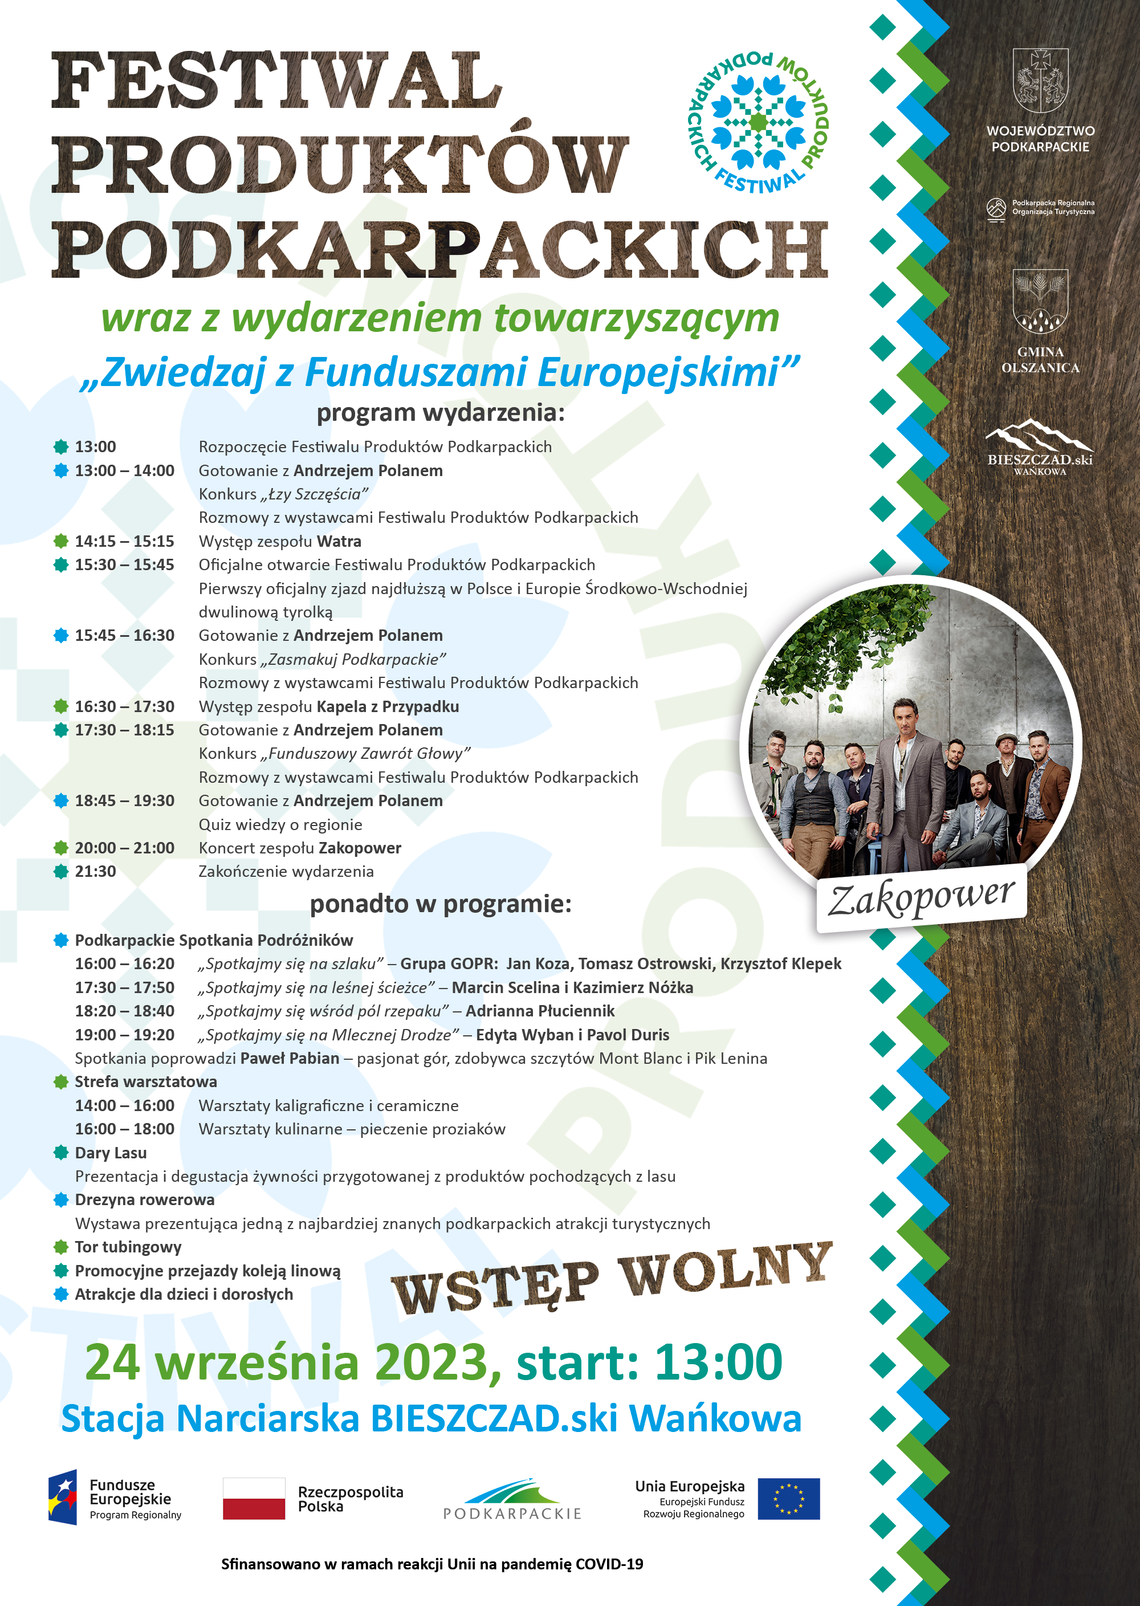 Festiwal Produktów Podkarpackich znów w Bieszczadach!